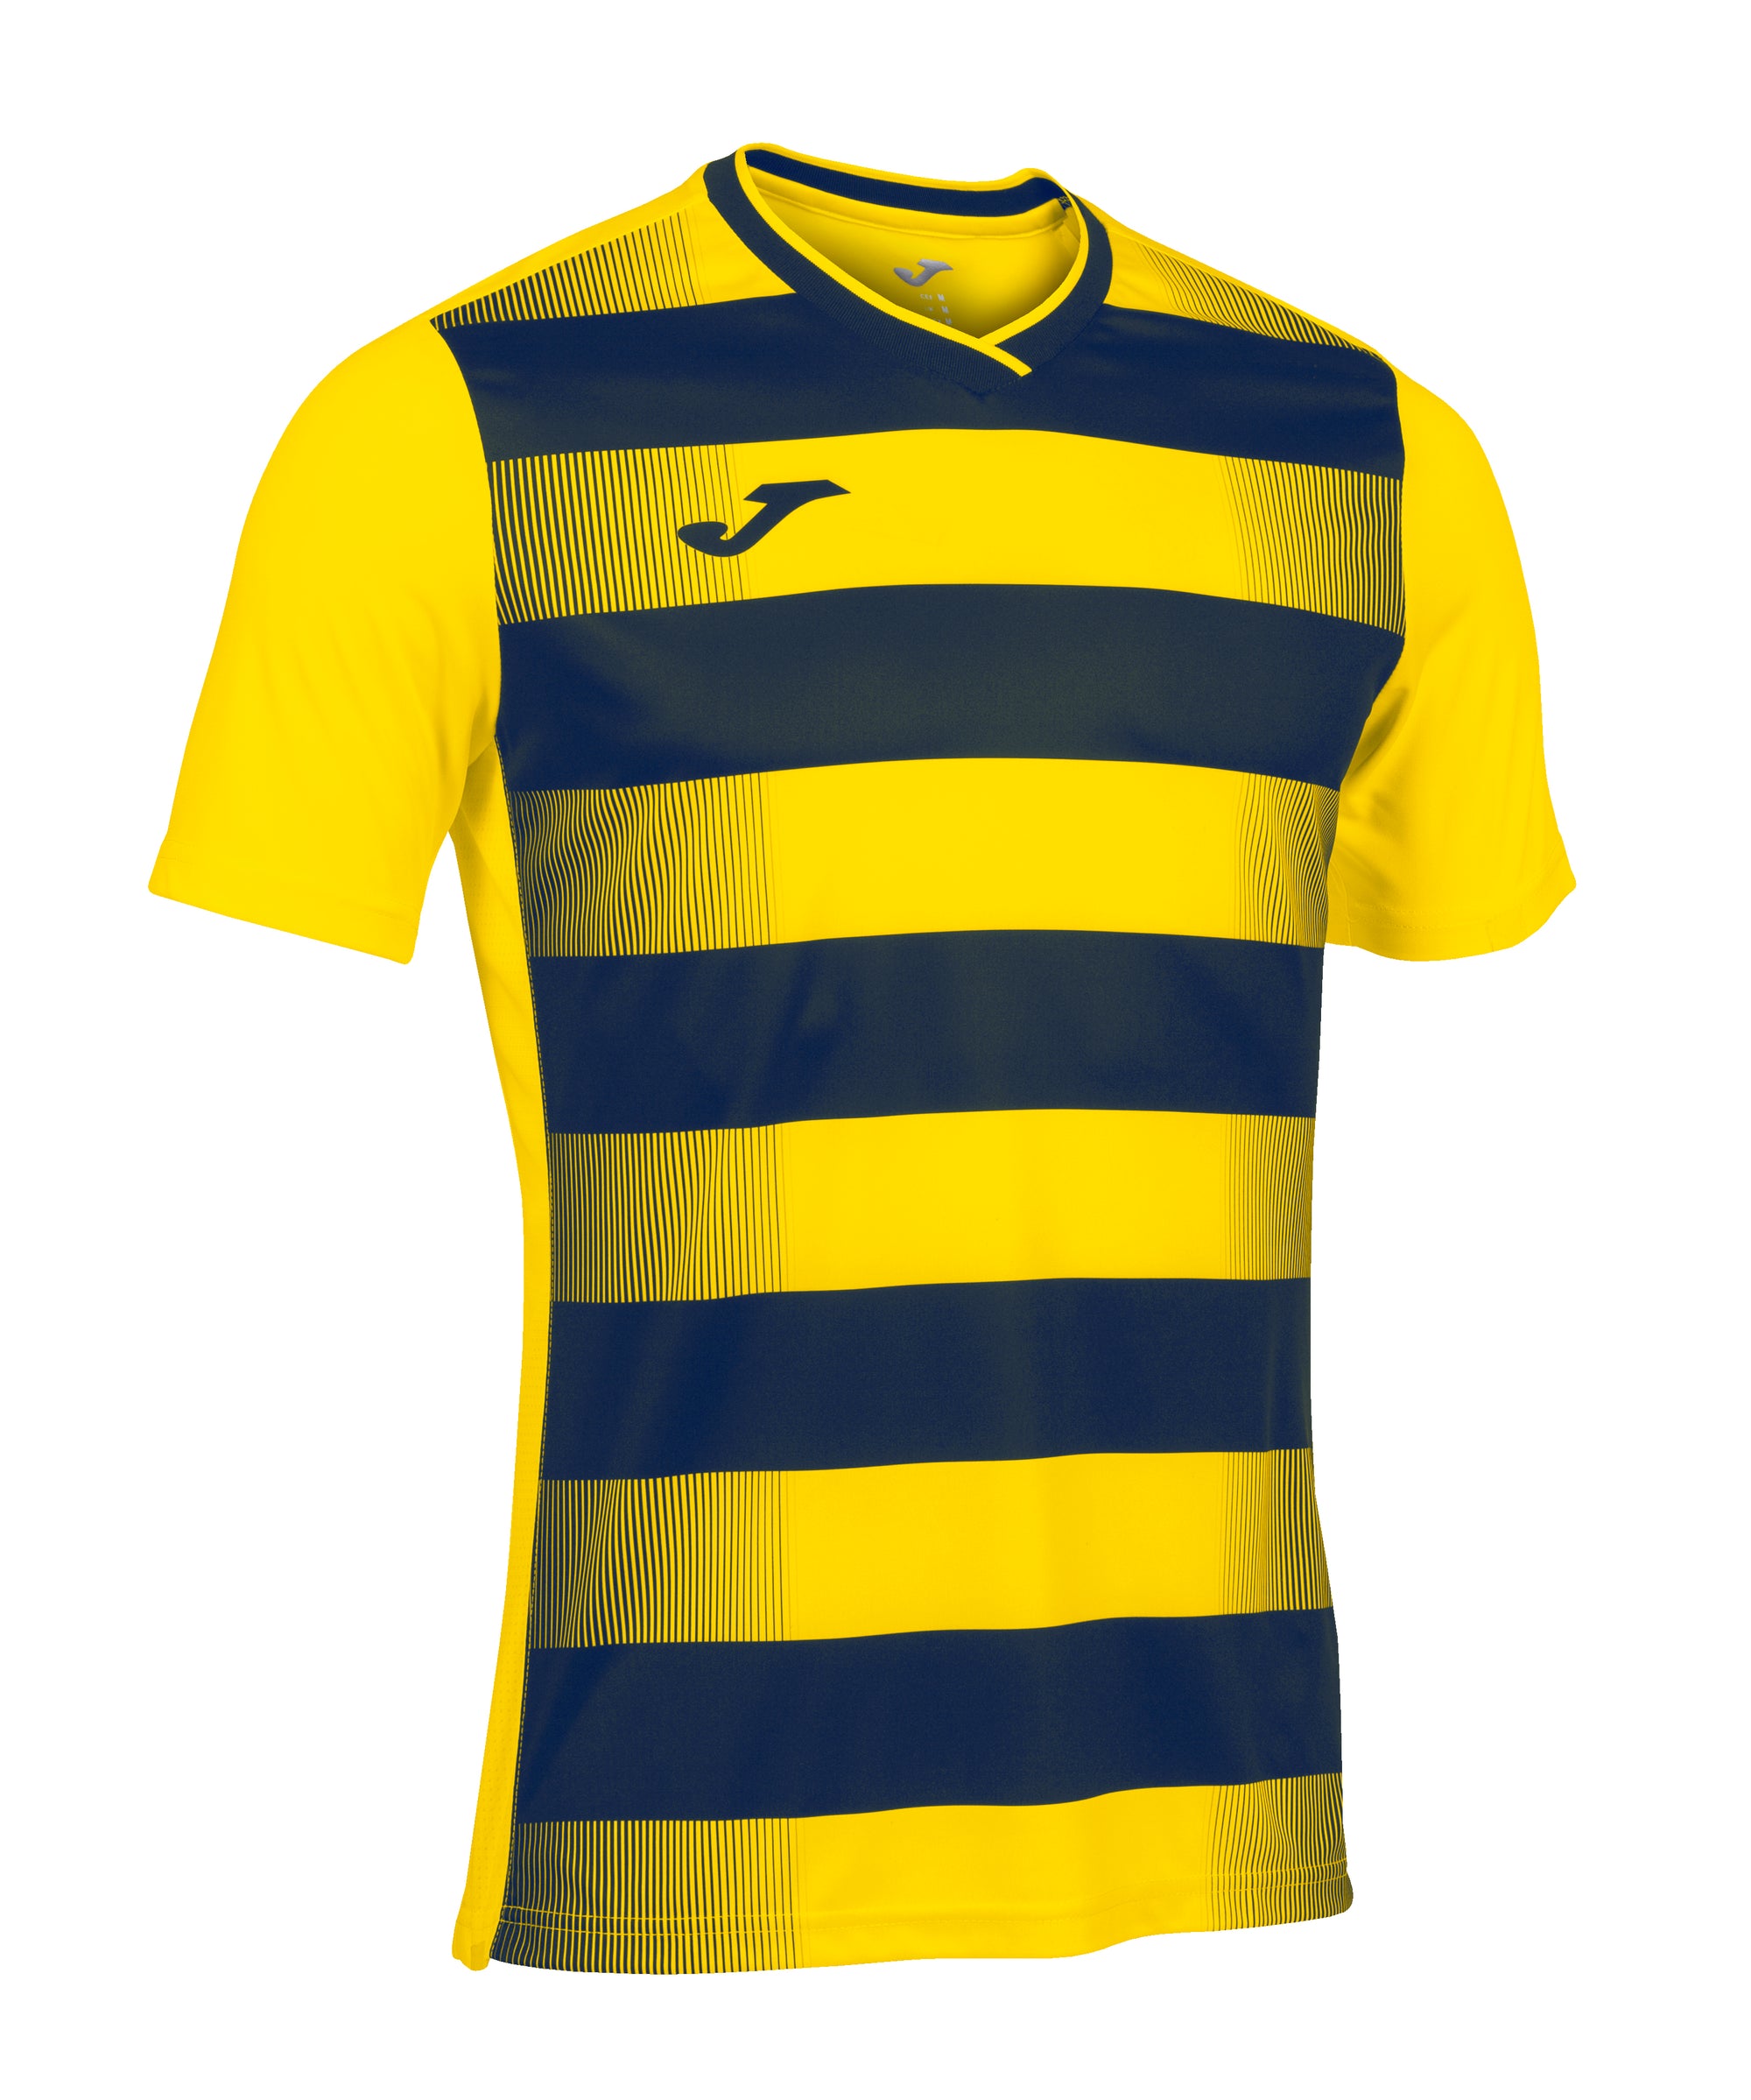 Joma Europa V Short Sleeve T-Shirt - Yellow/Dark Navy